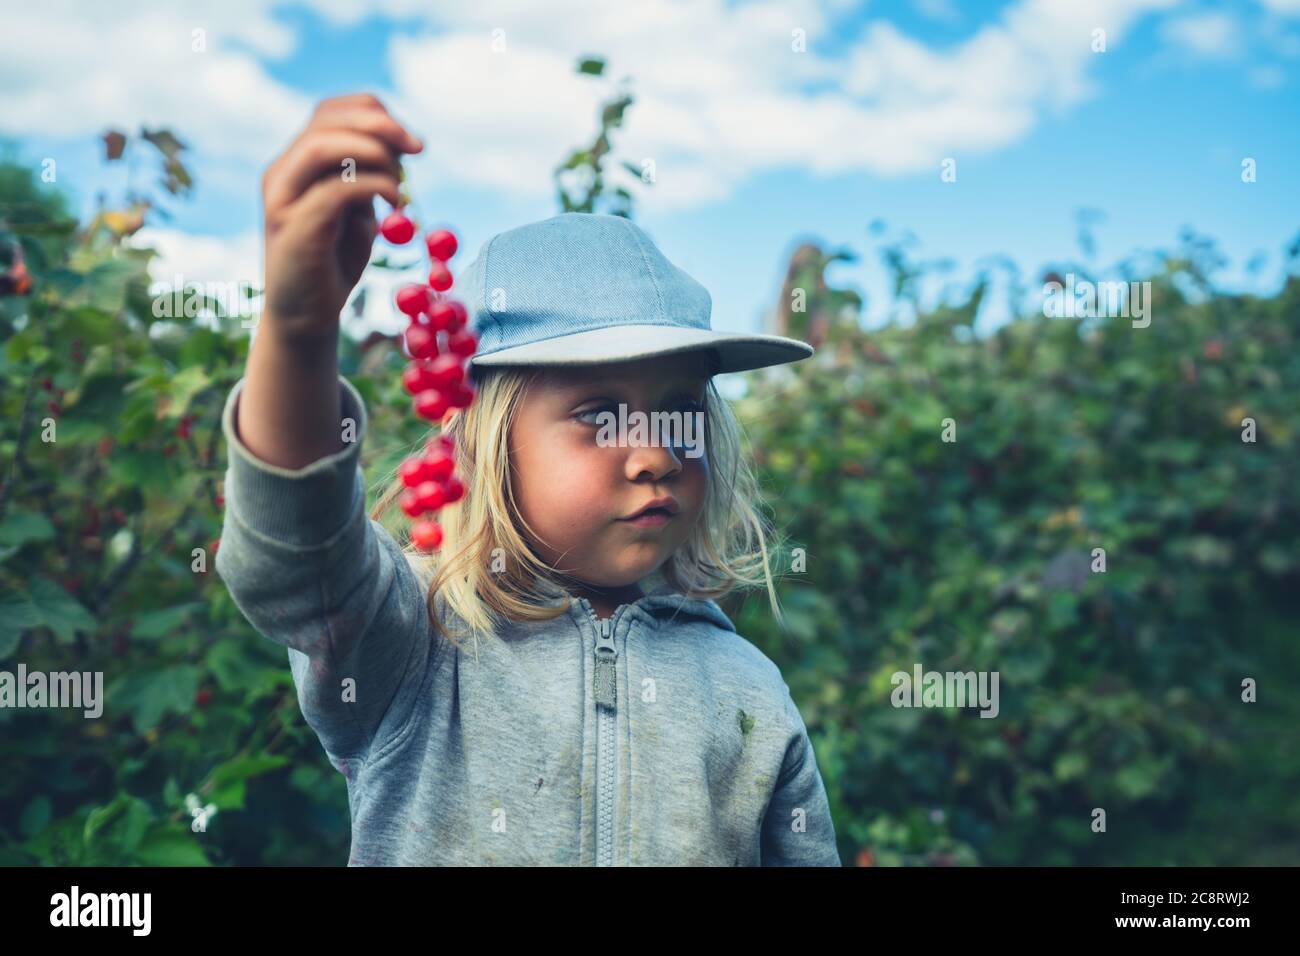 Un préchooleur est debout parmi les buissons de fruits sur une ferme avec quelques baies Banque D'Images